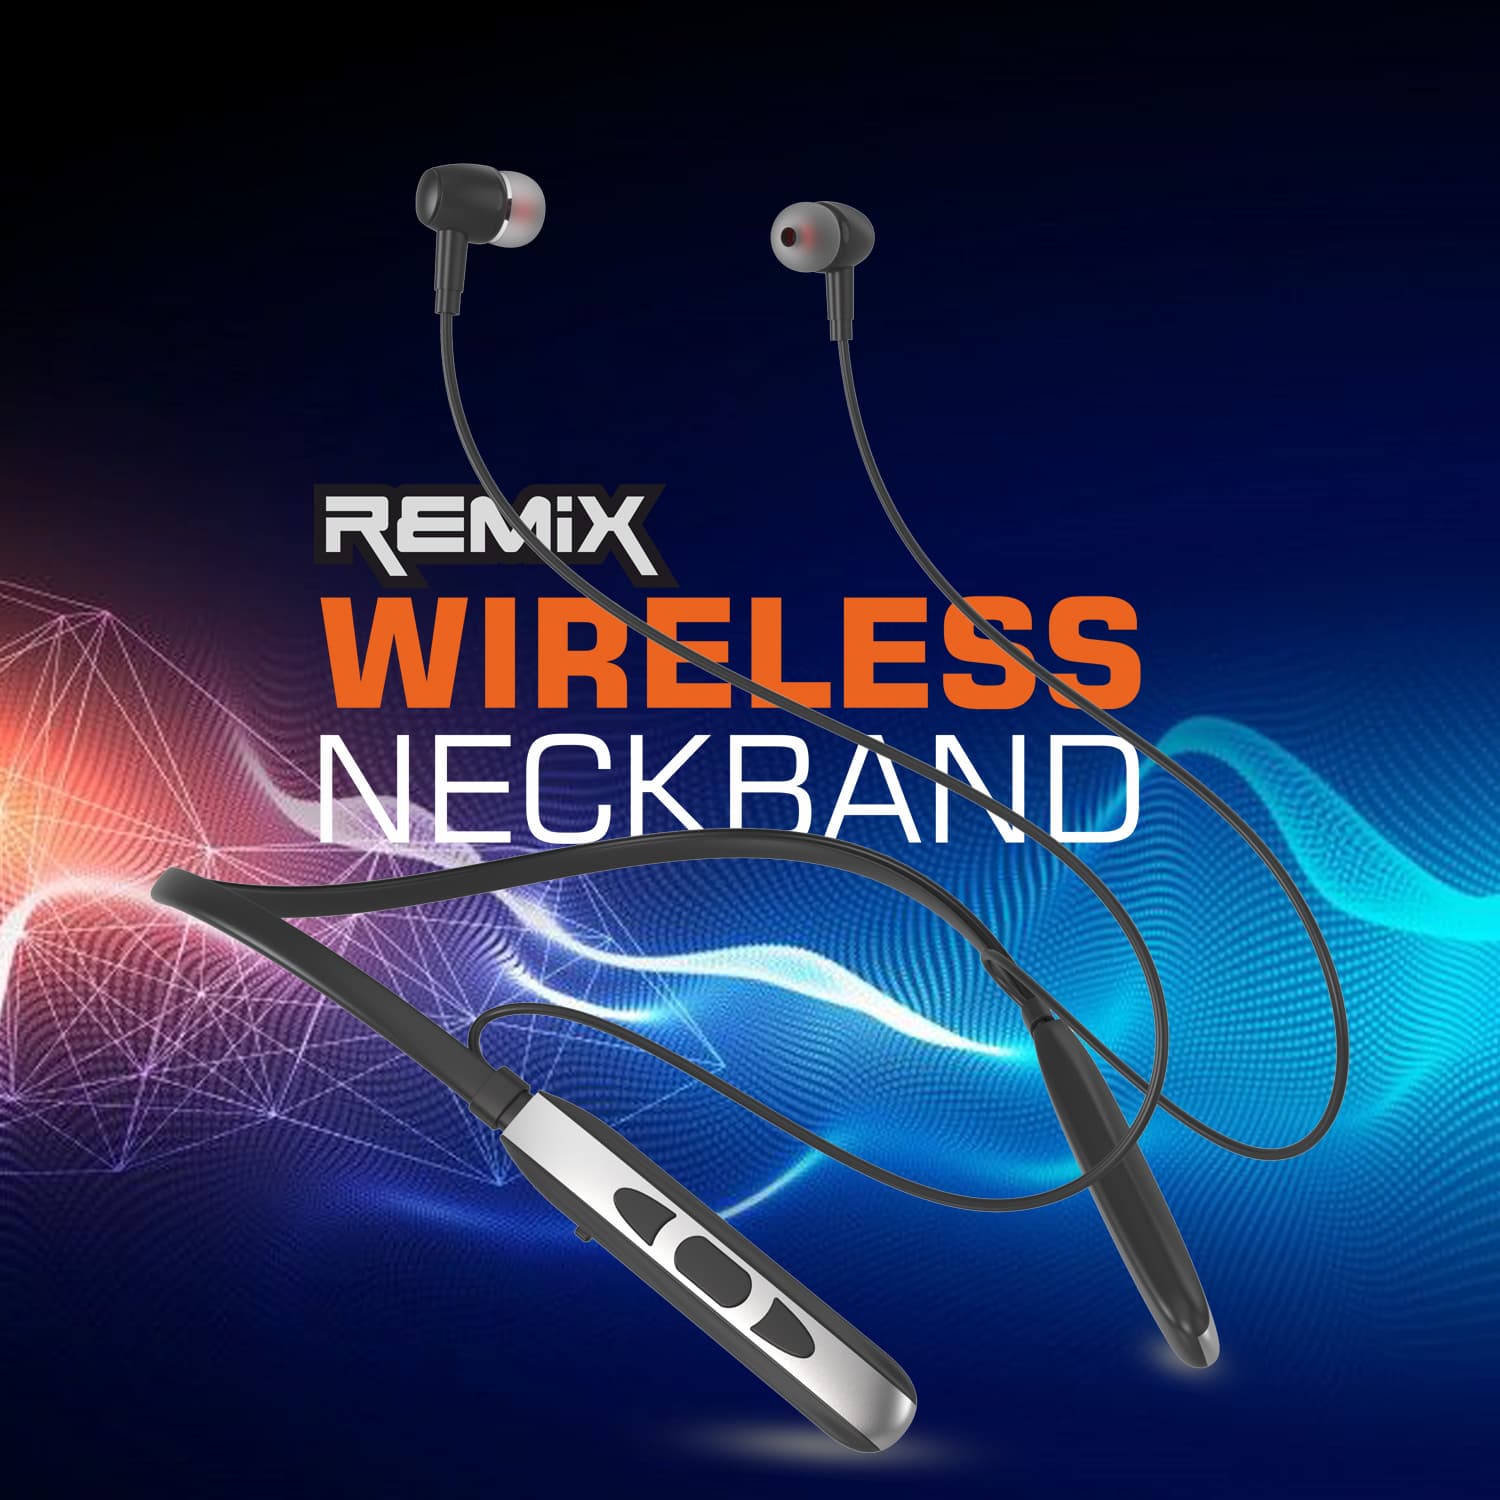 Unix Elite 5 Remix Wireless Neckband - Super Bass and Long Battery Life